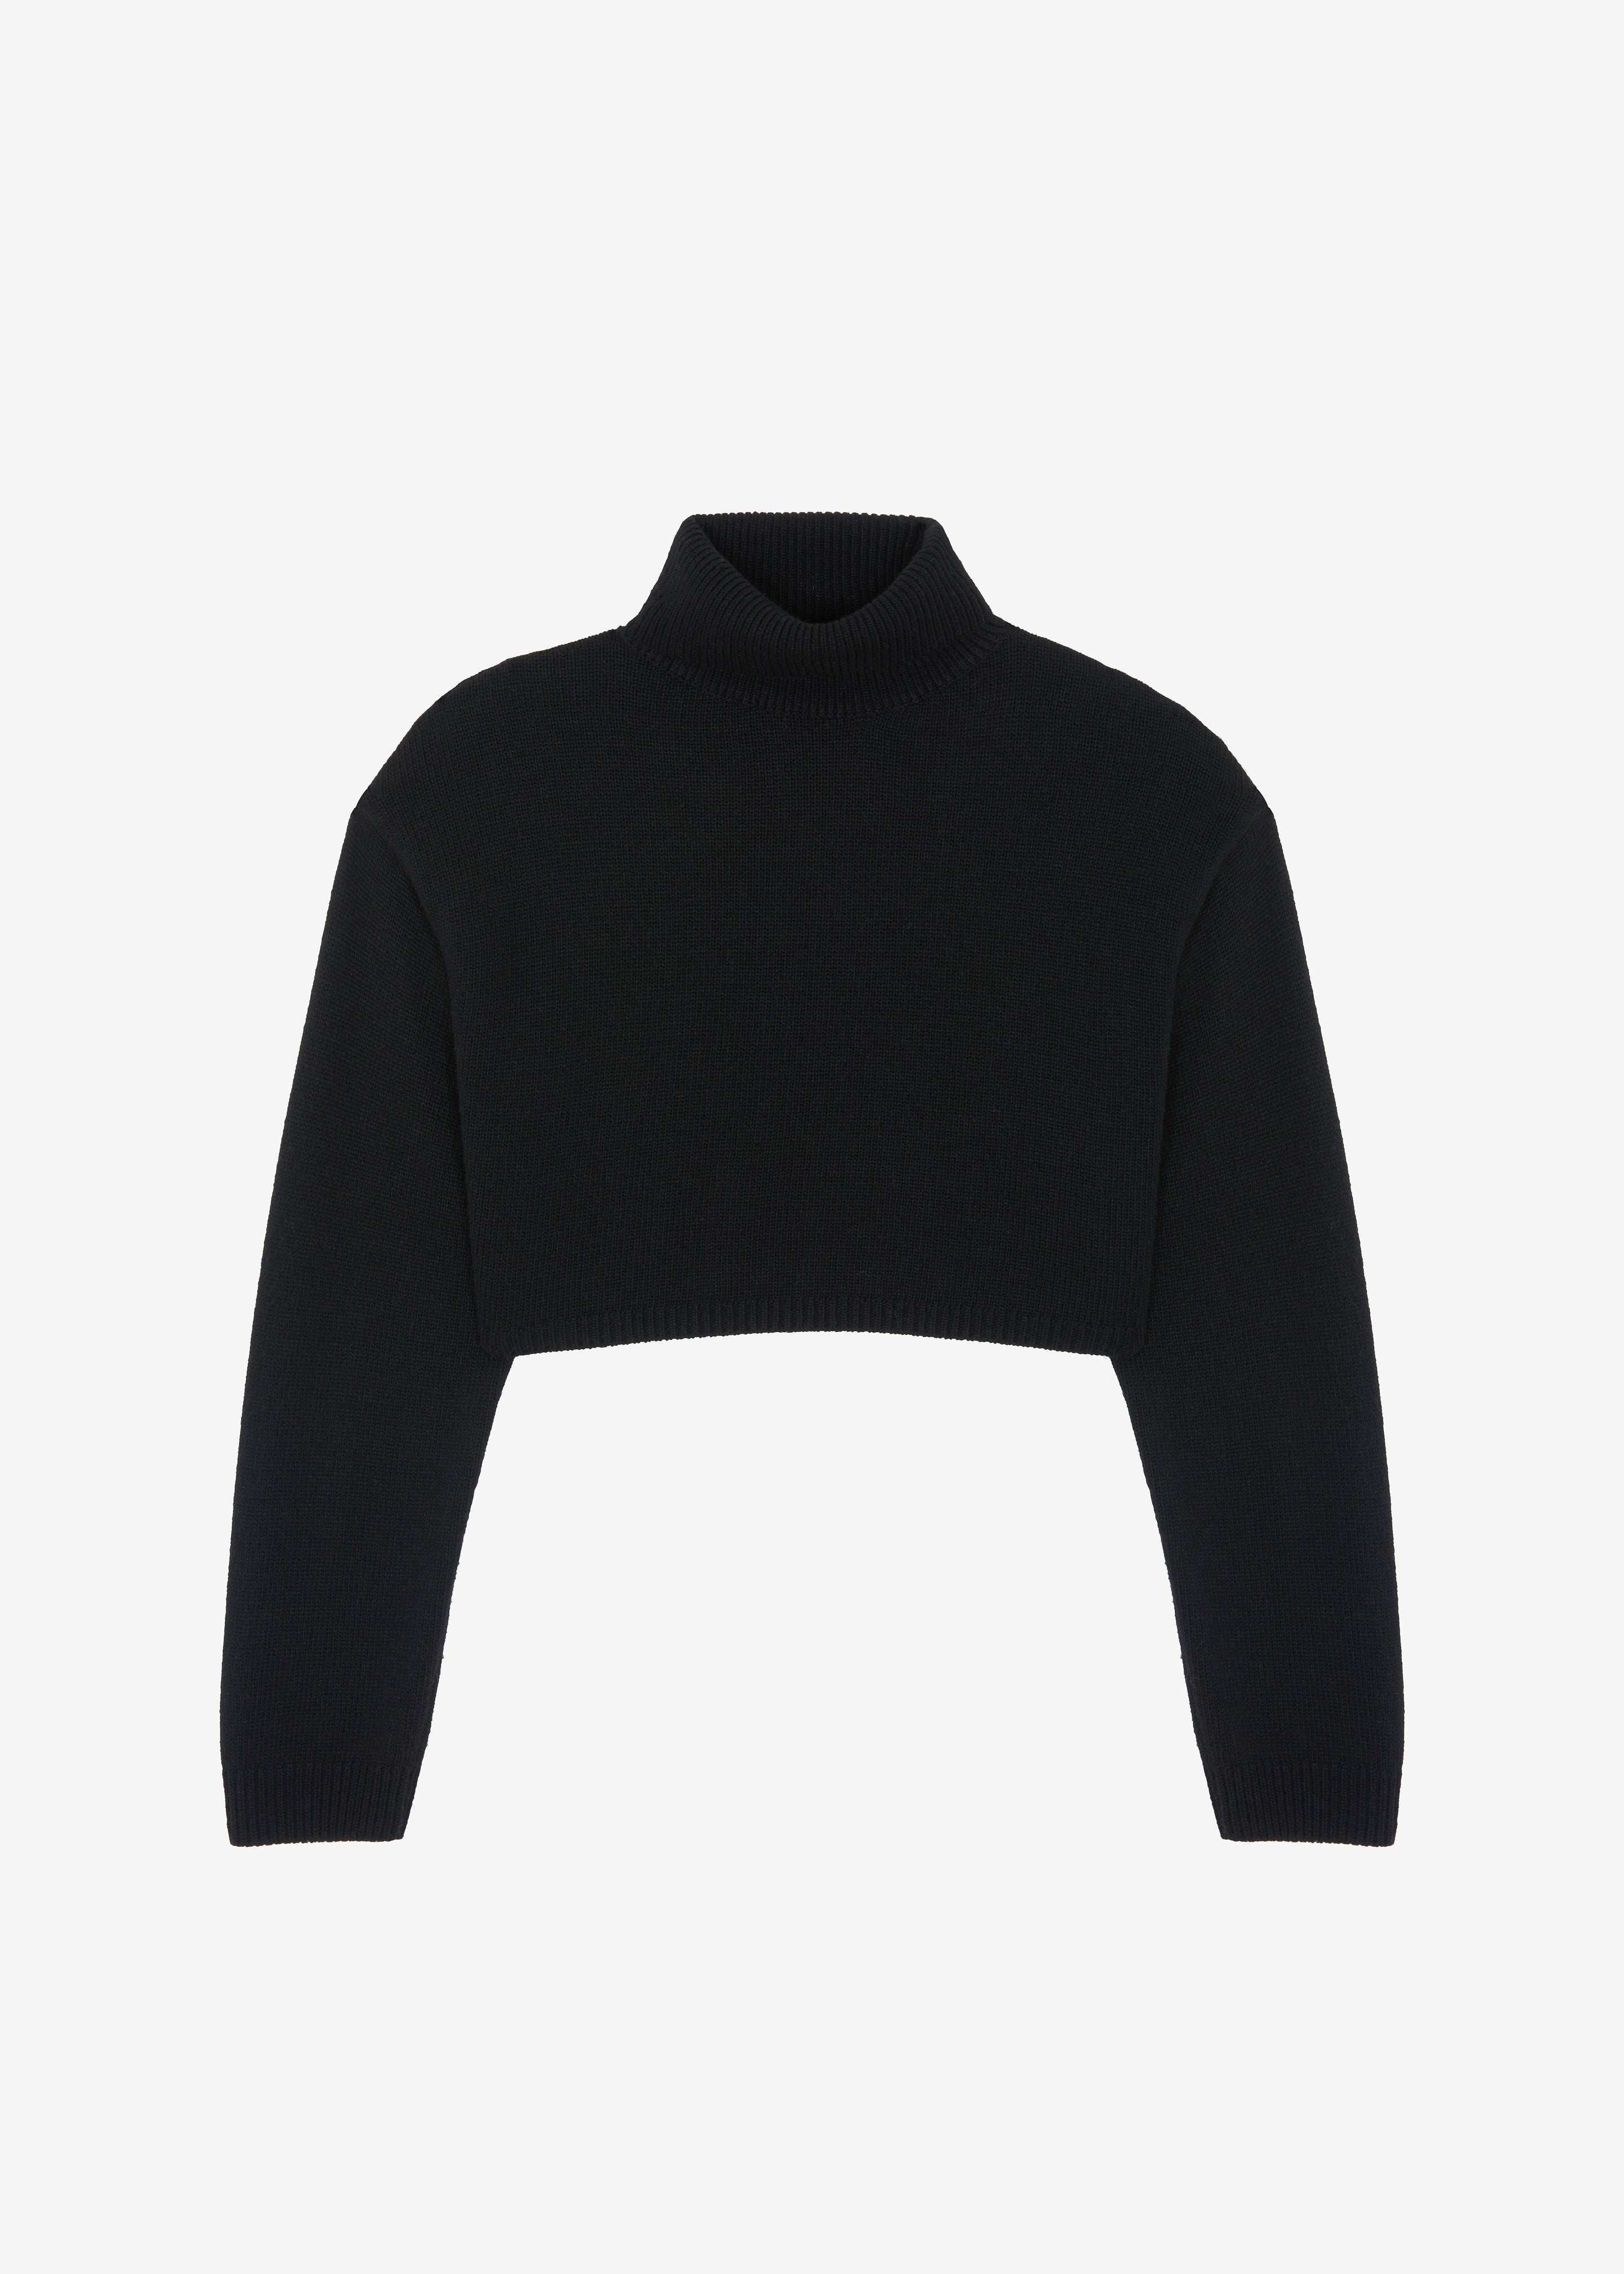 Athina Cropped Turtleneck Sweater - Black - 6